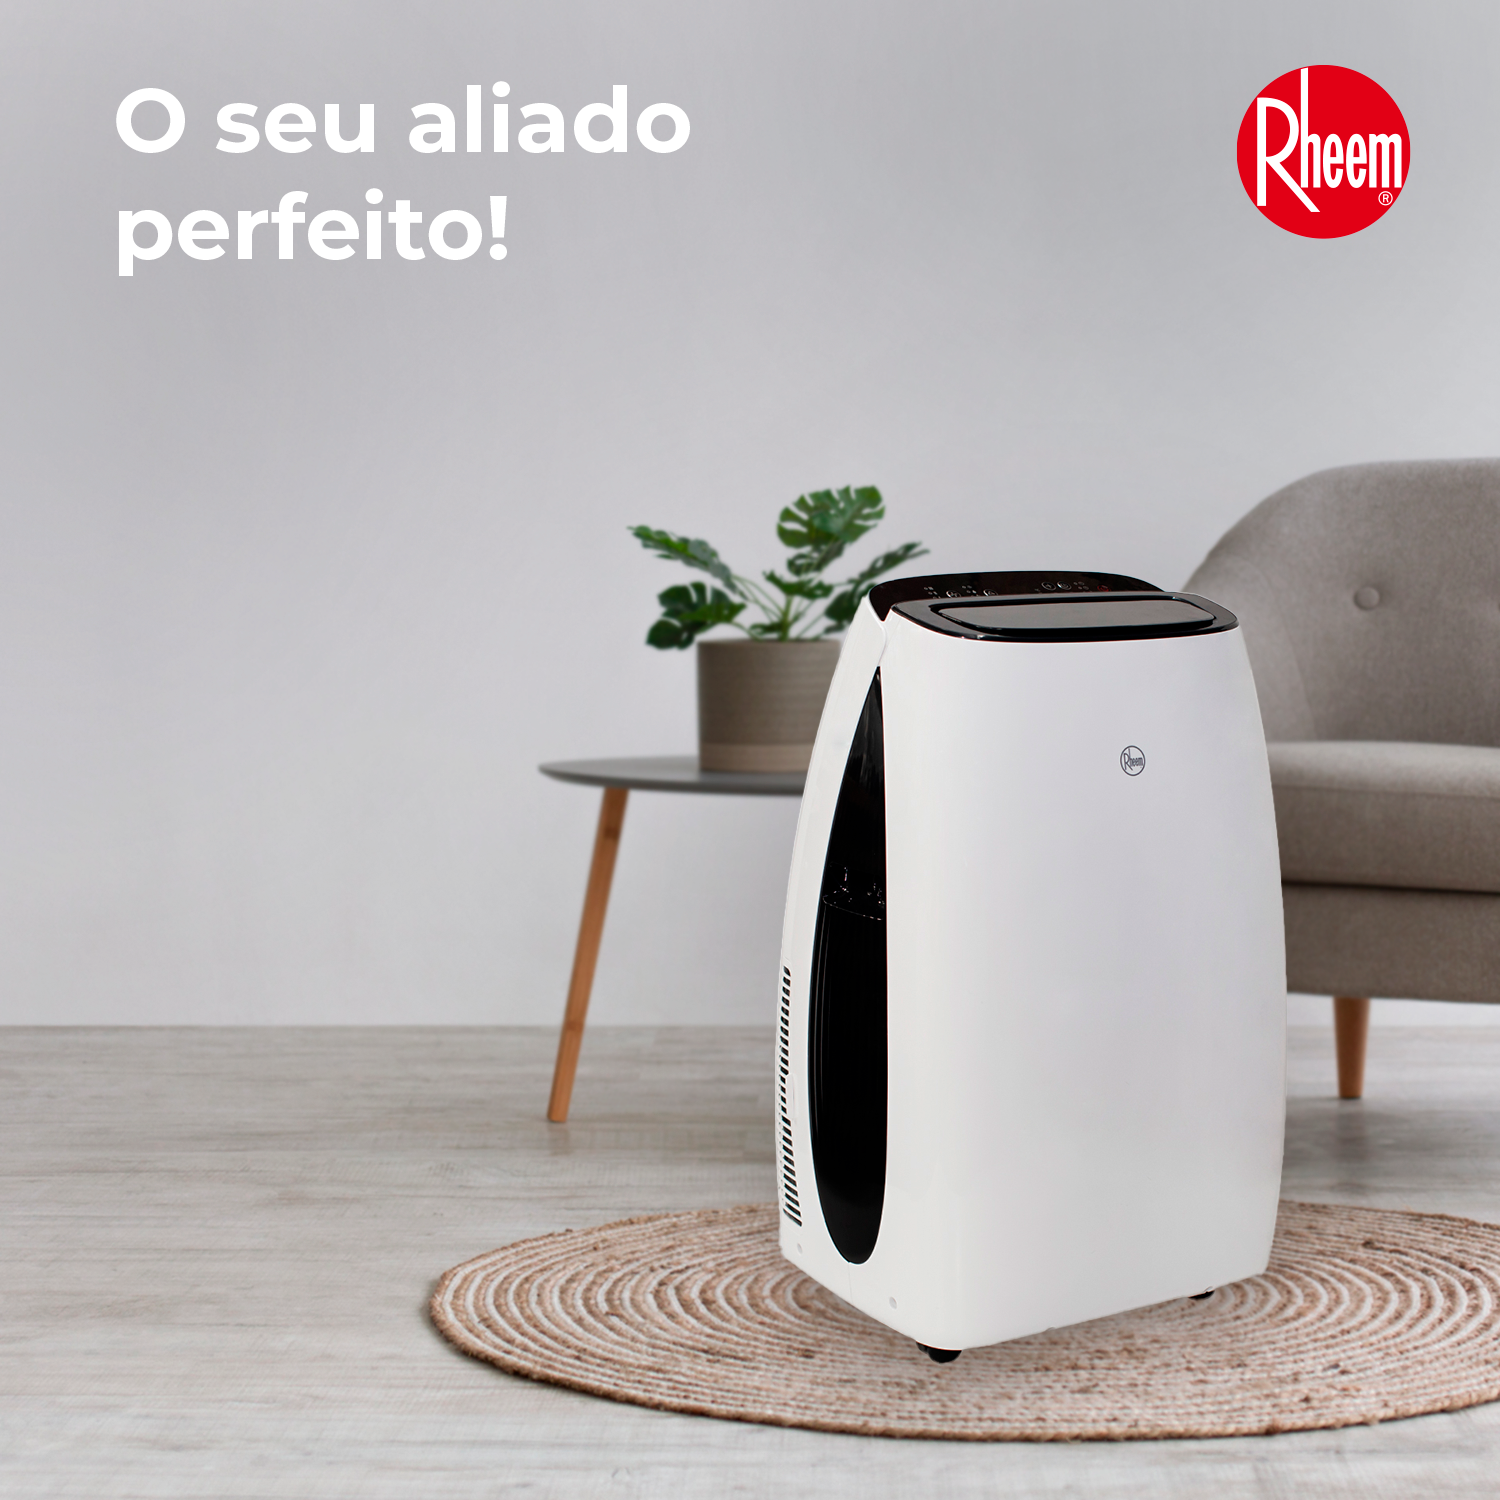 Ar condicionado portátil: ar puro e refrescante - Rheem Brazil